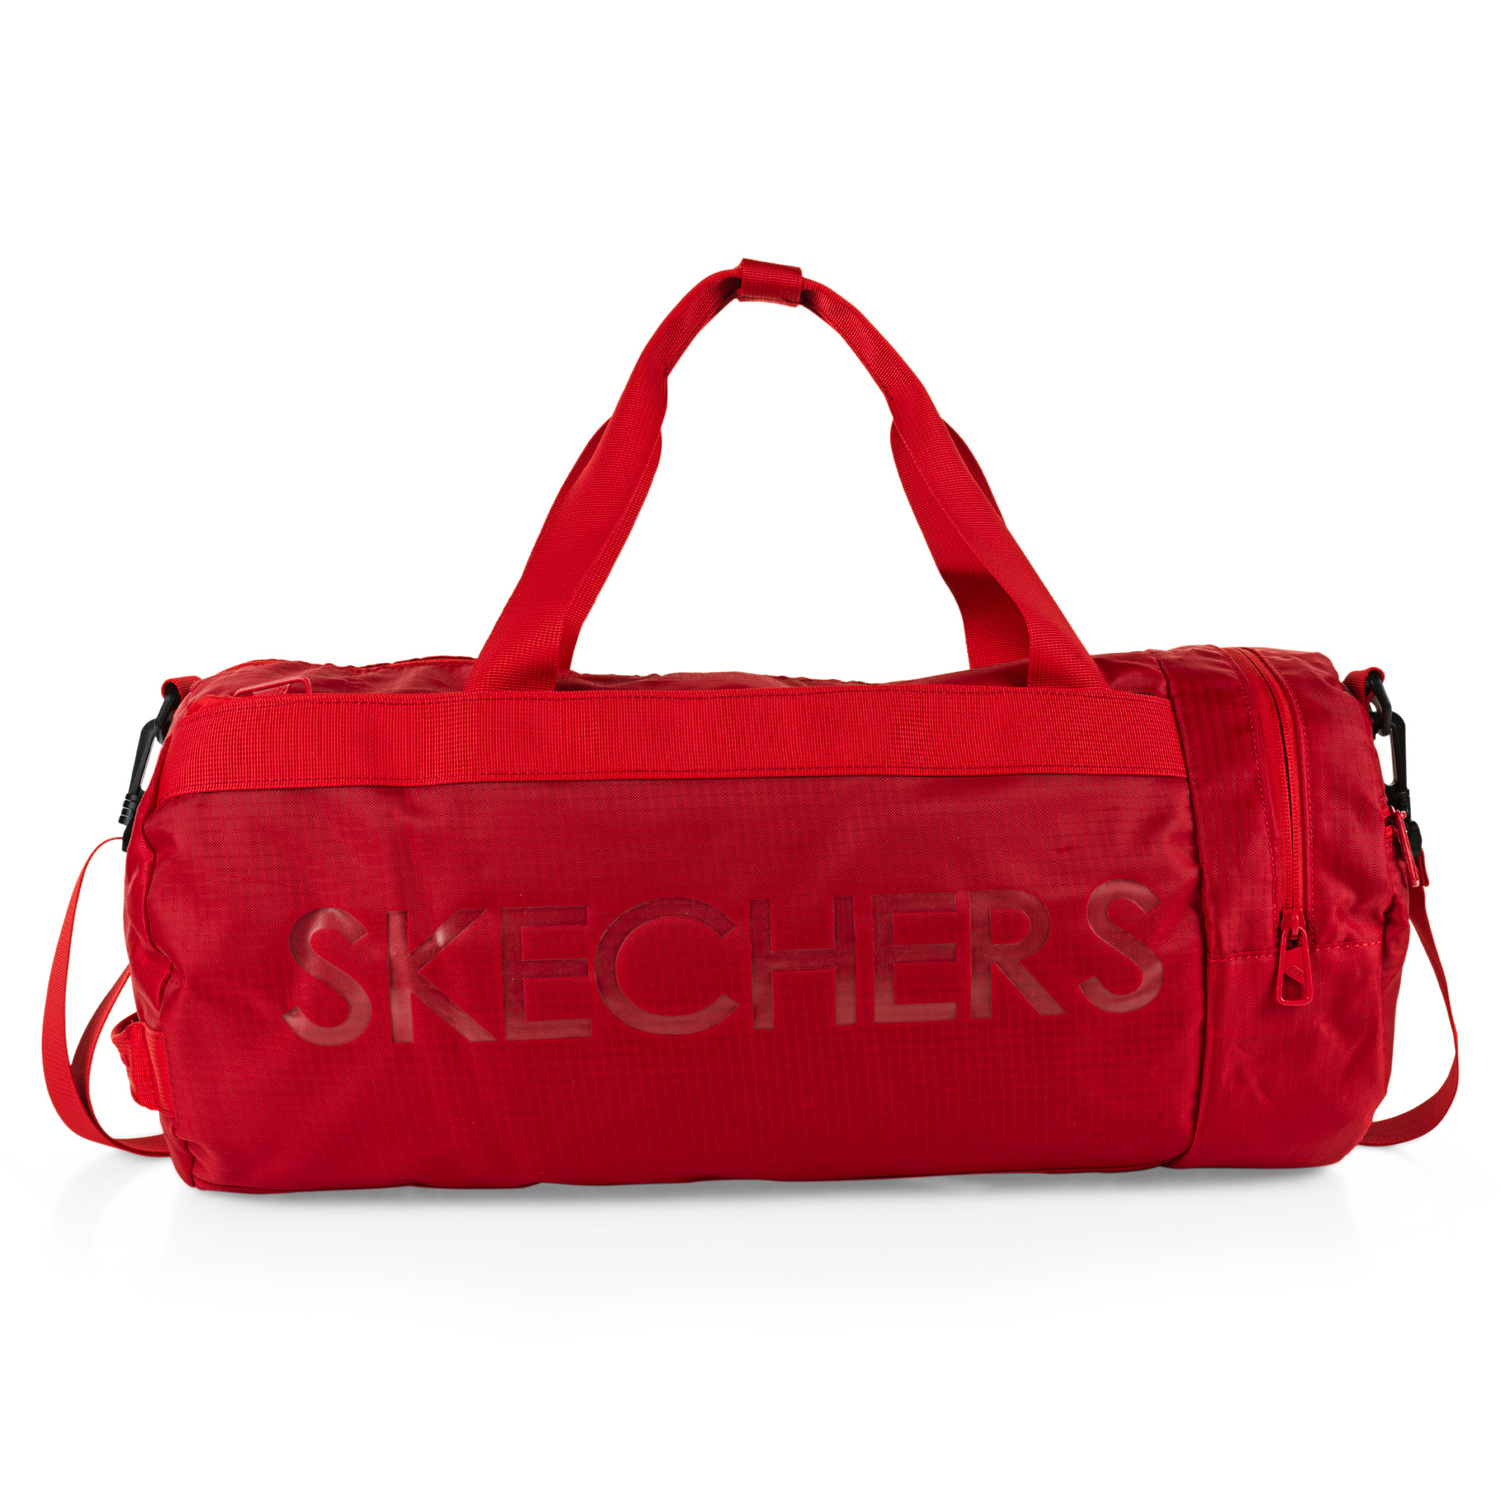 Bolsa Deportiva Skechers S1174 - rojo - 